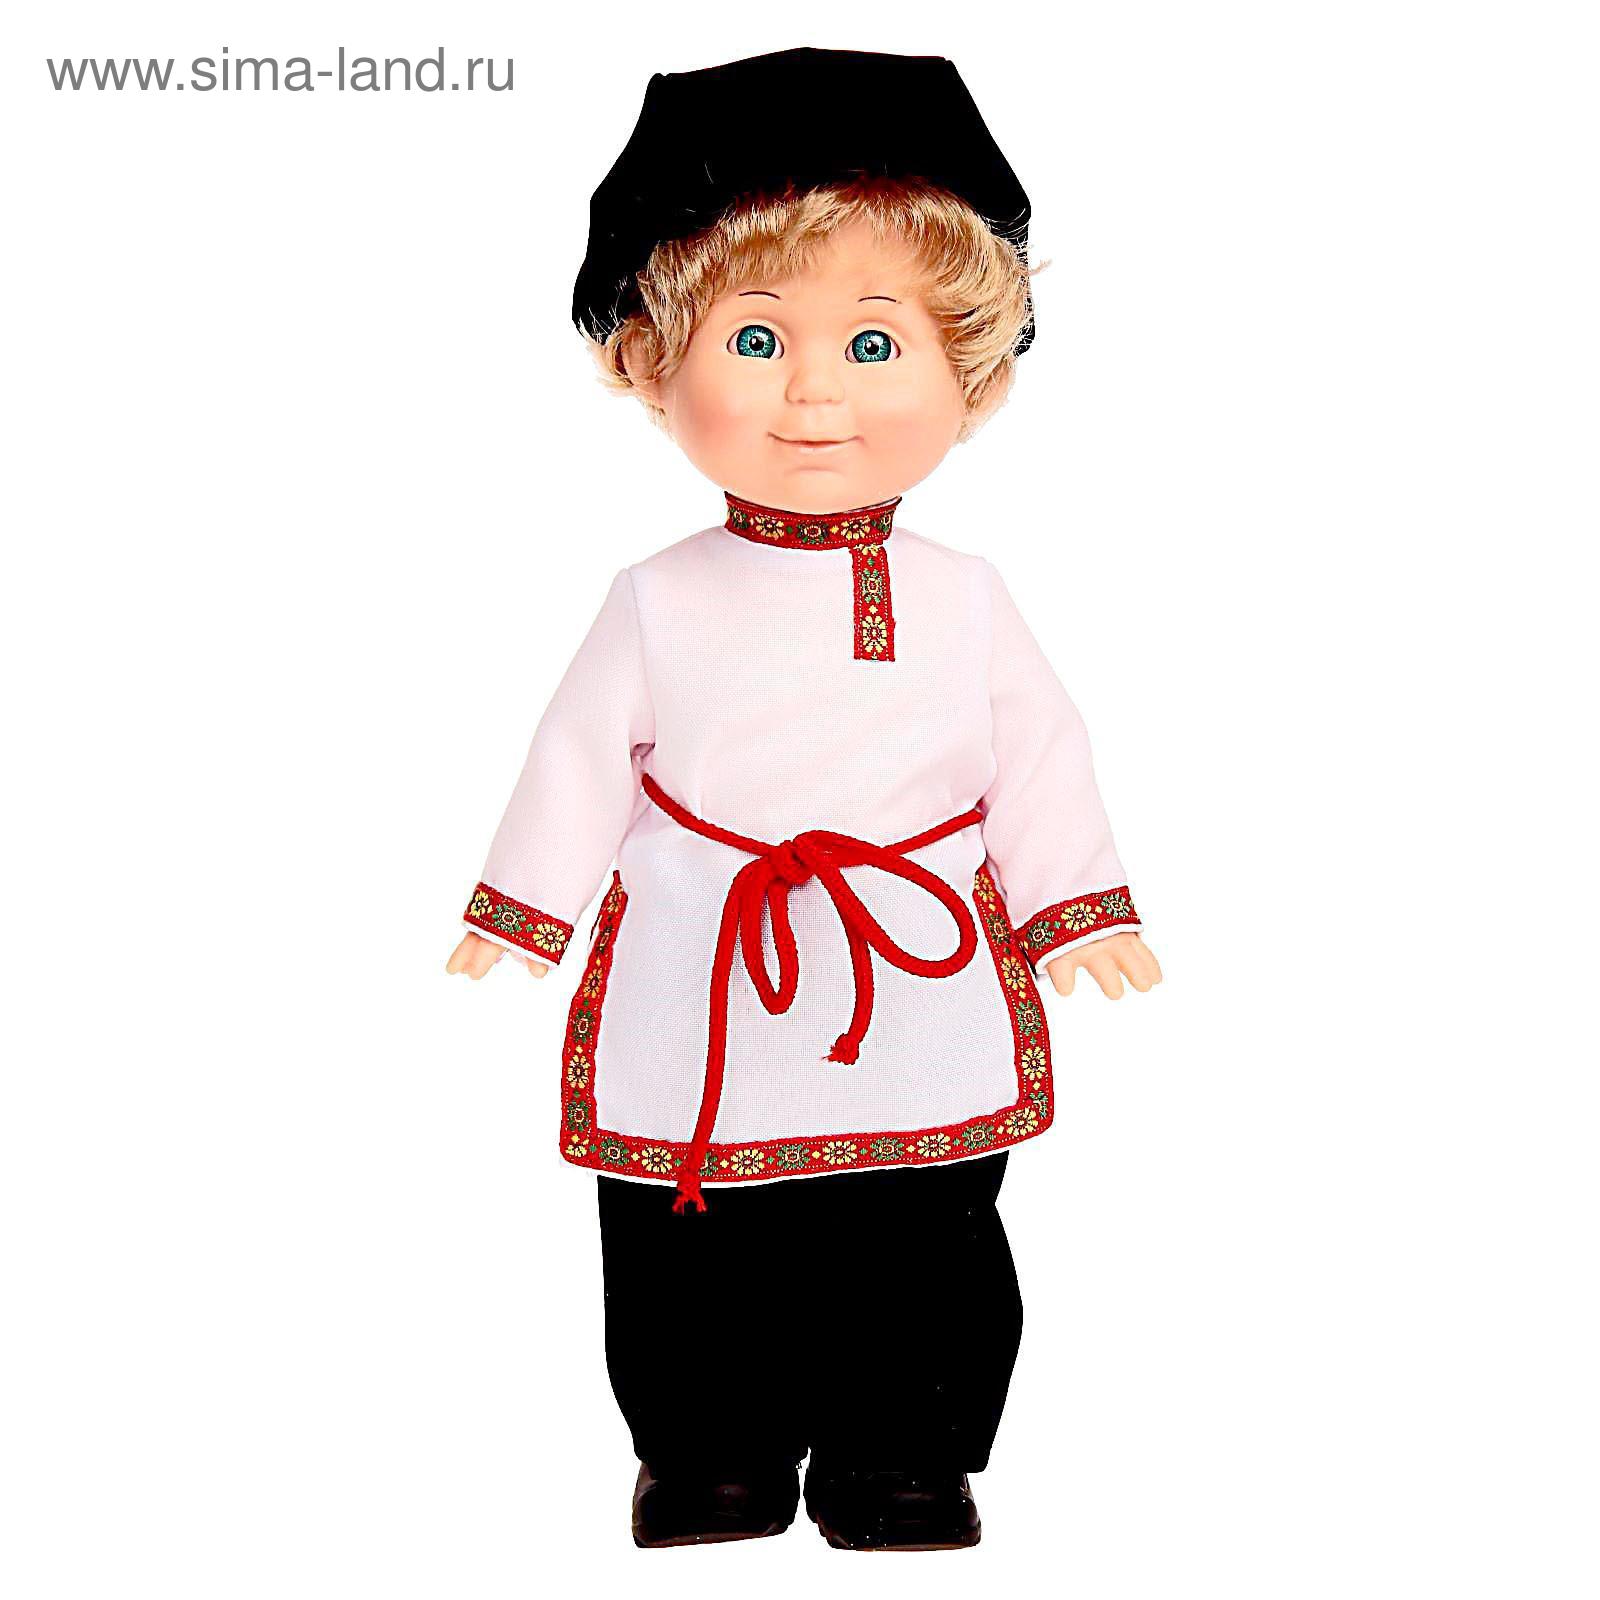 Кукла Митя в русском костюме